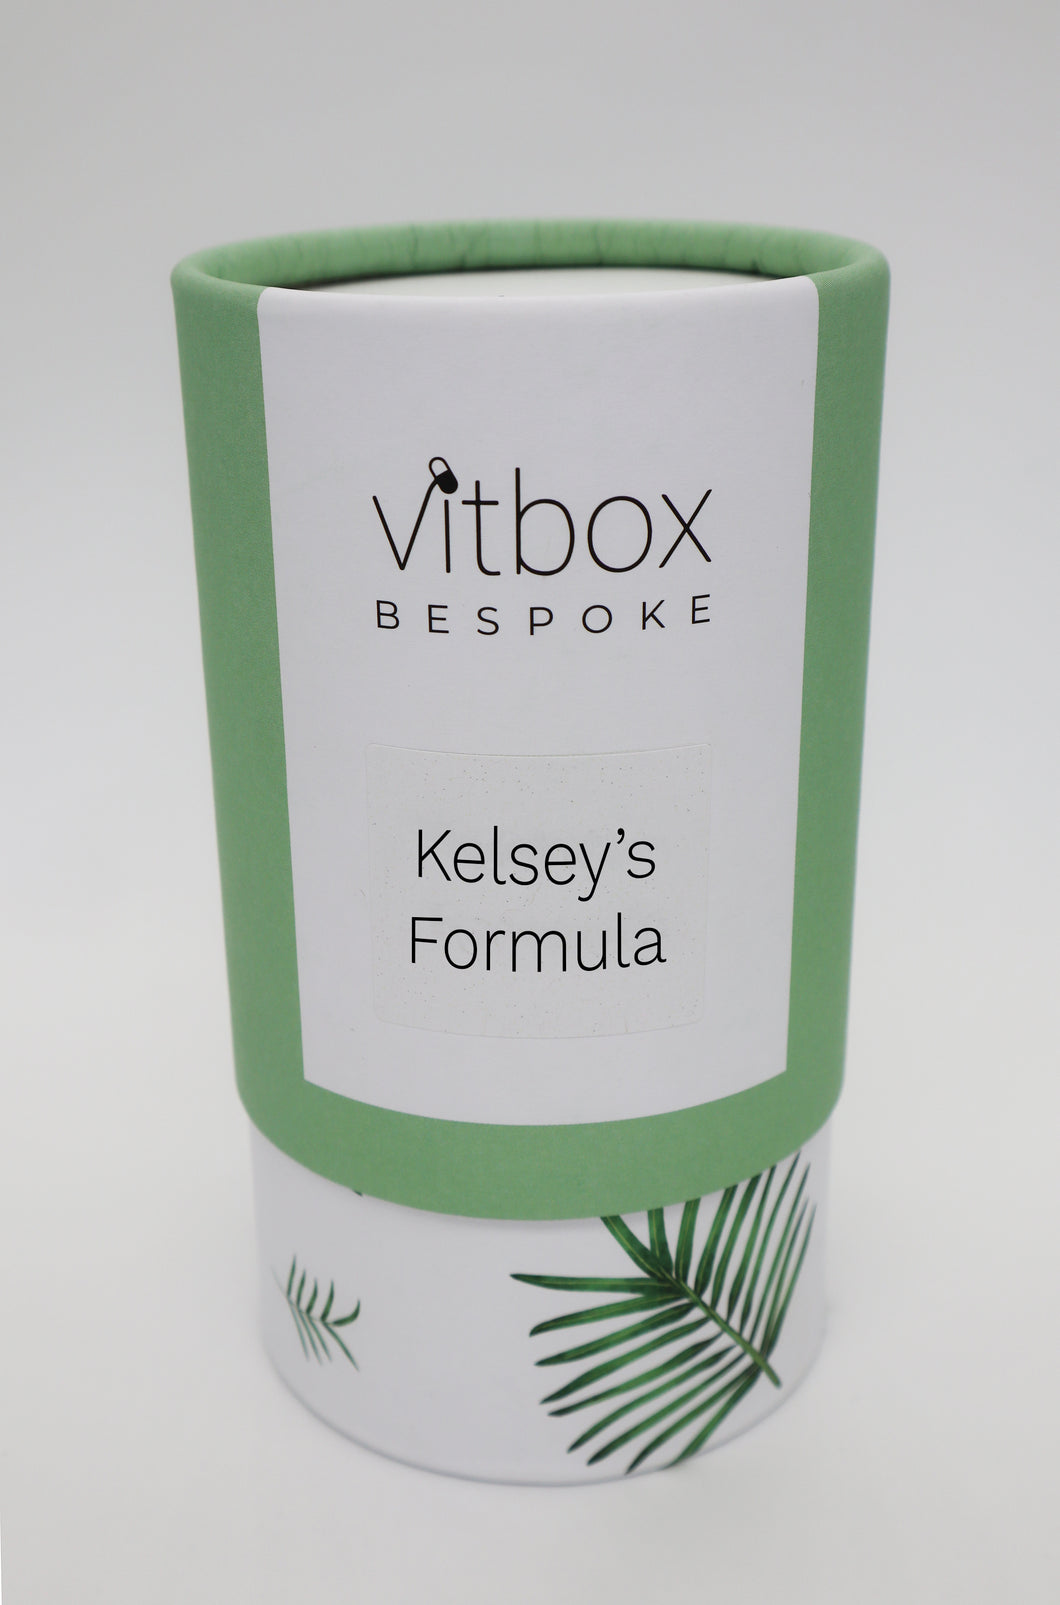 Kelsey's Vitbox Bespoke